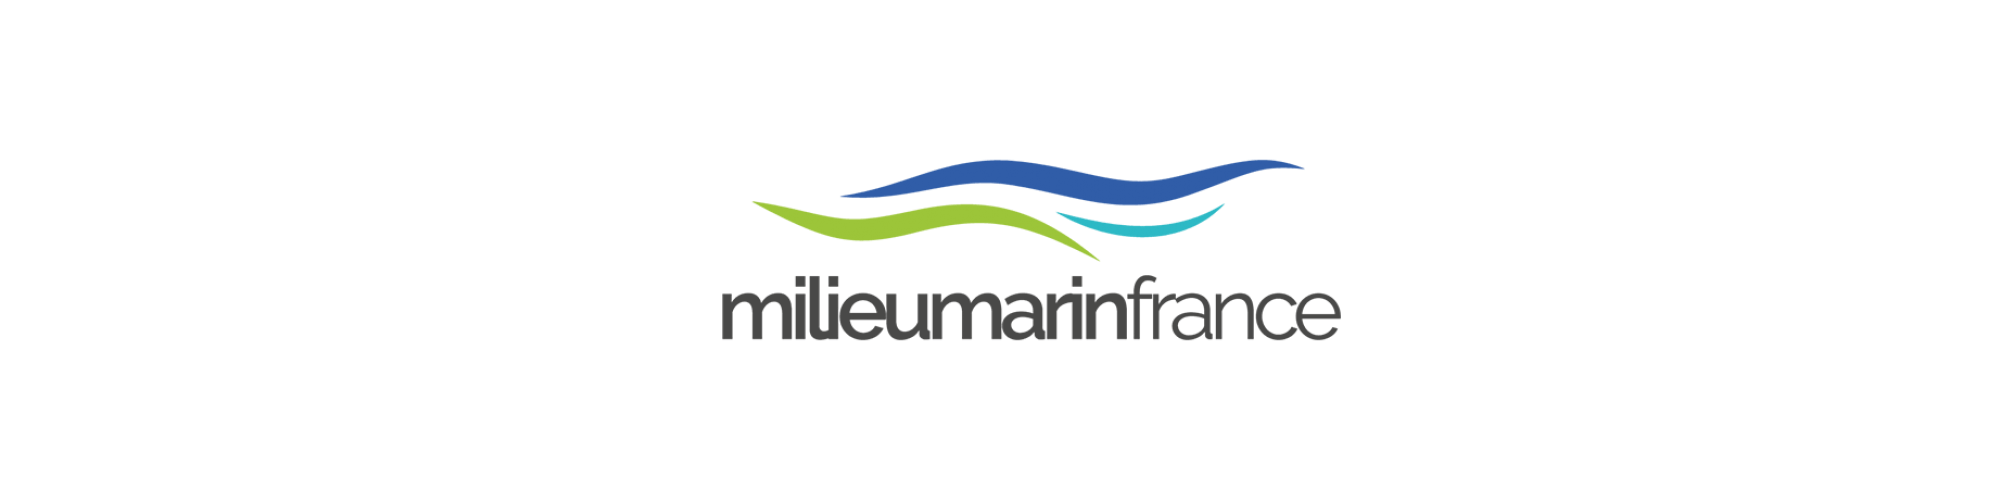 Logo milieumarinfrance